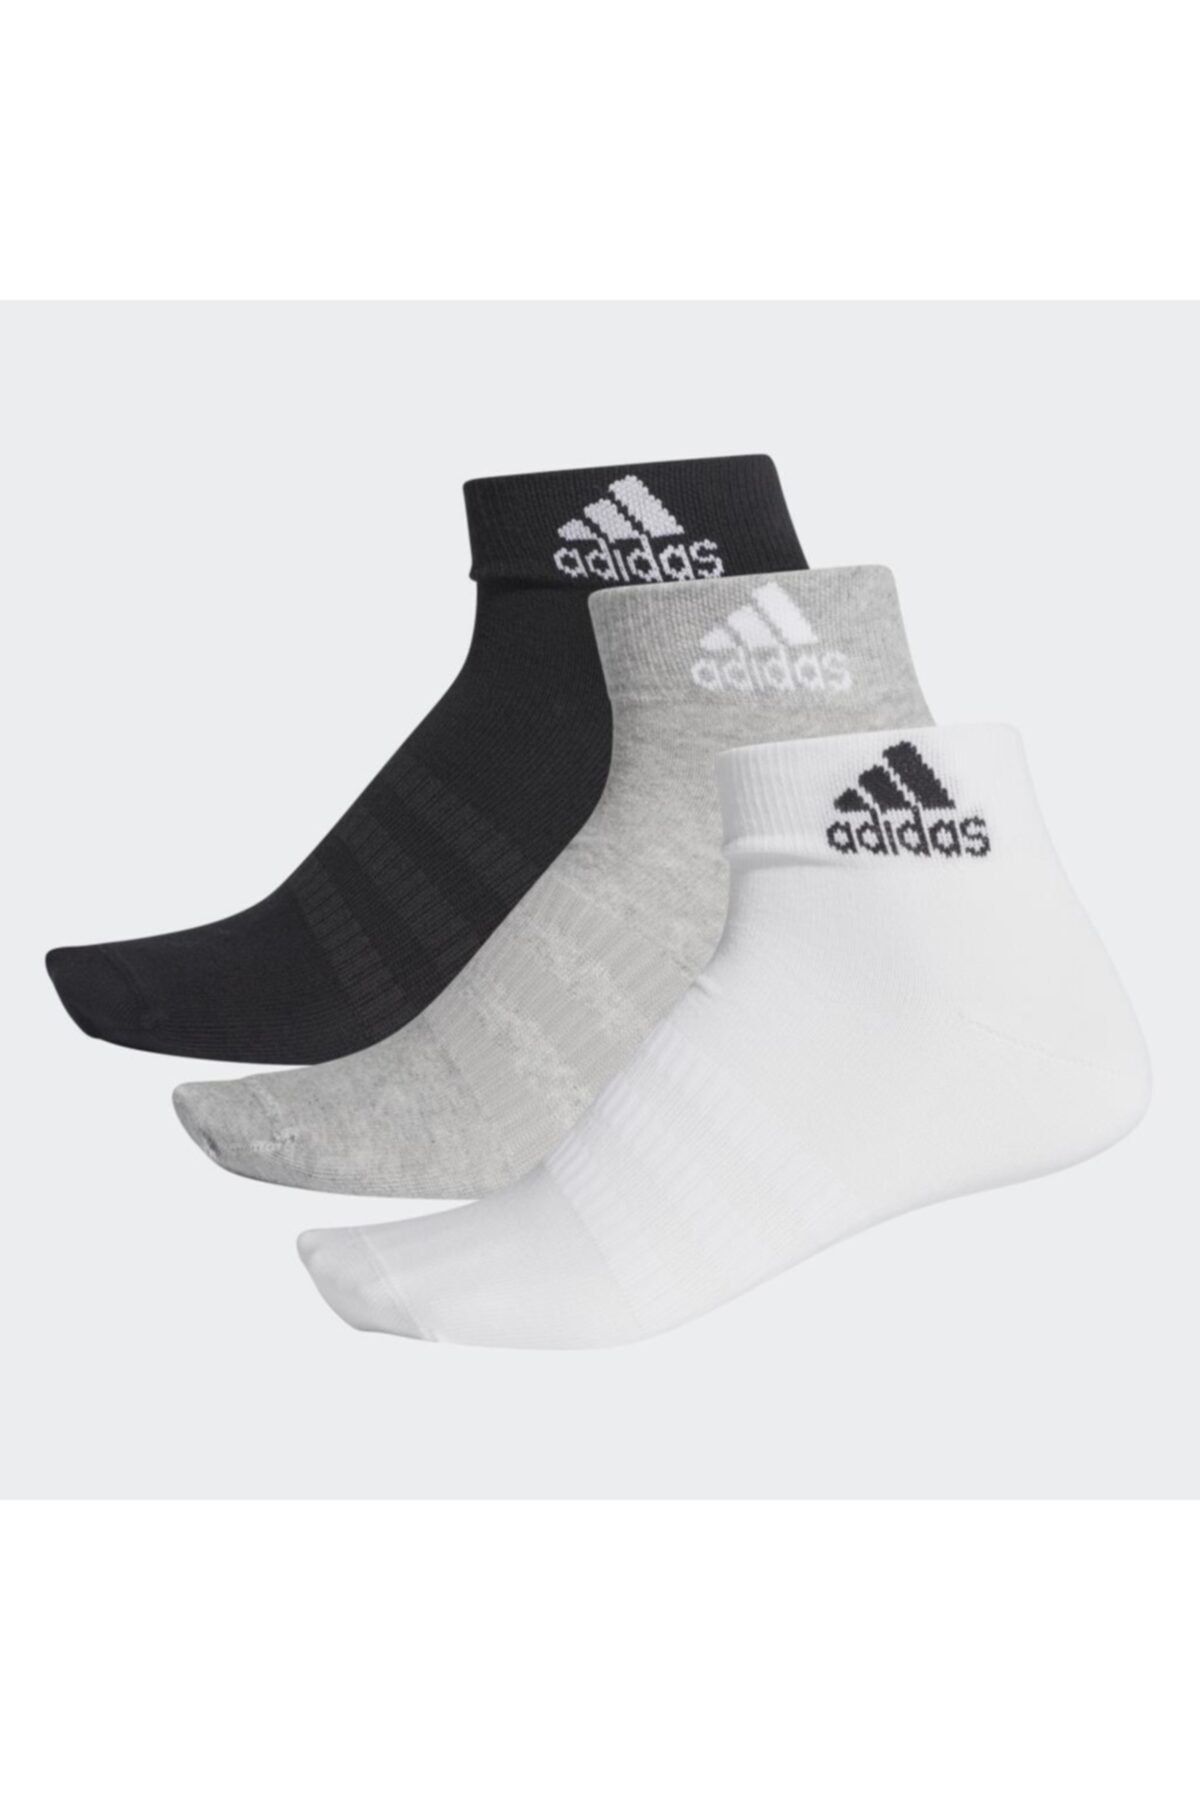 & Adidas Spor Çorap Modelleri - Trendyol